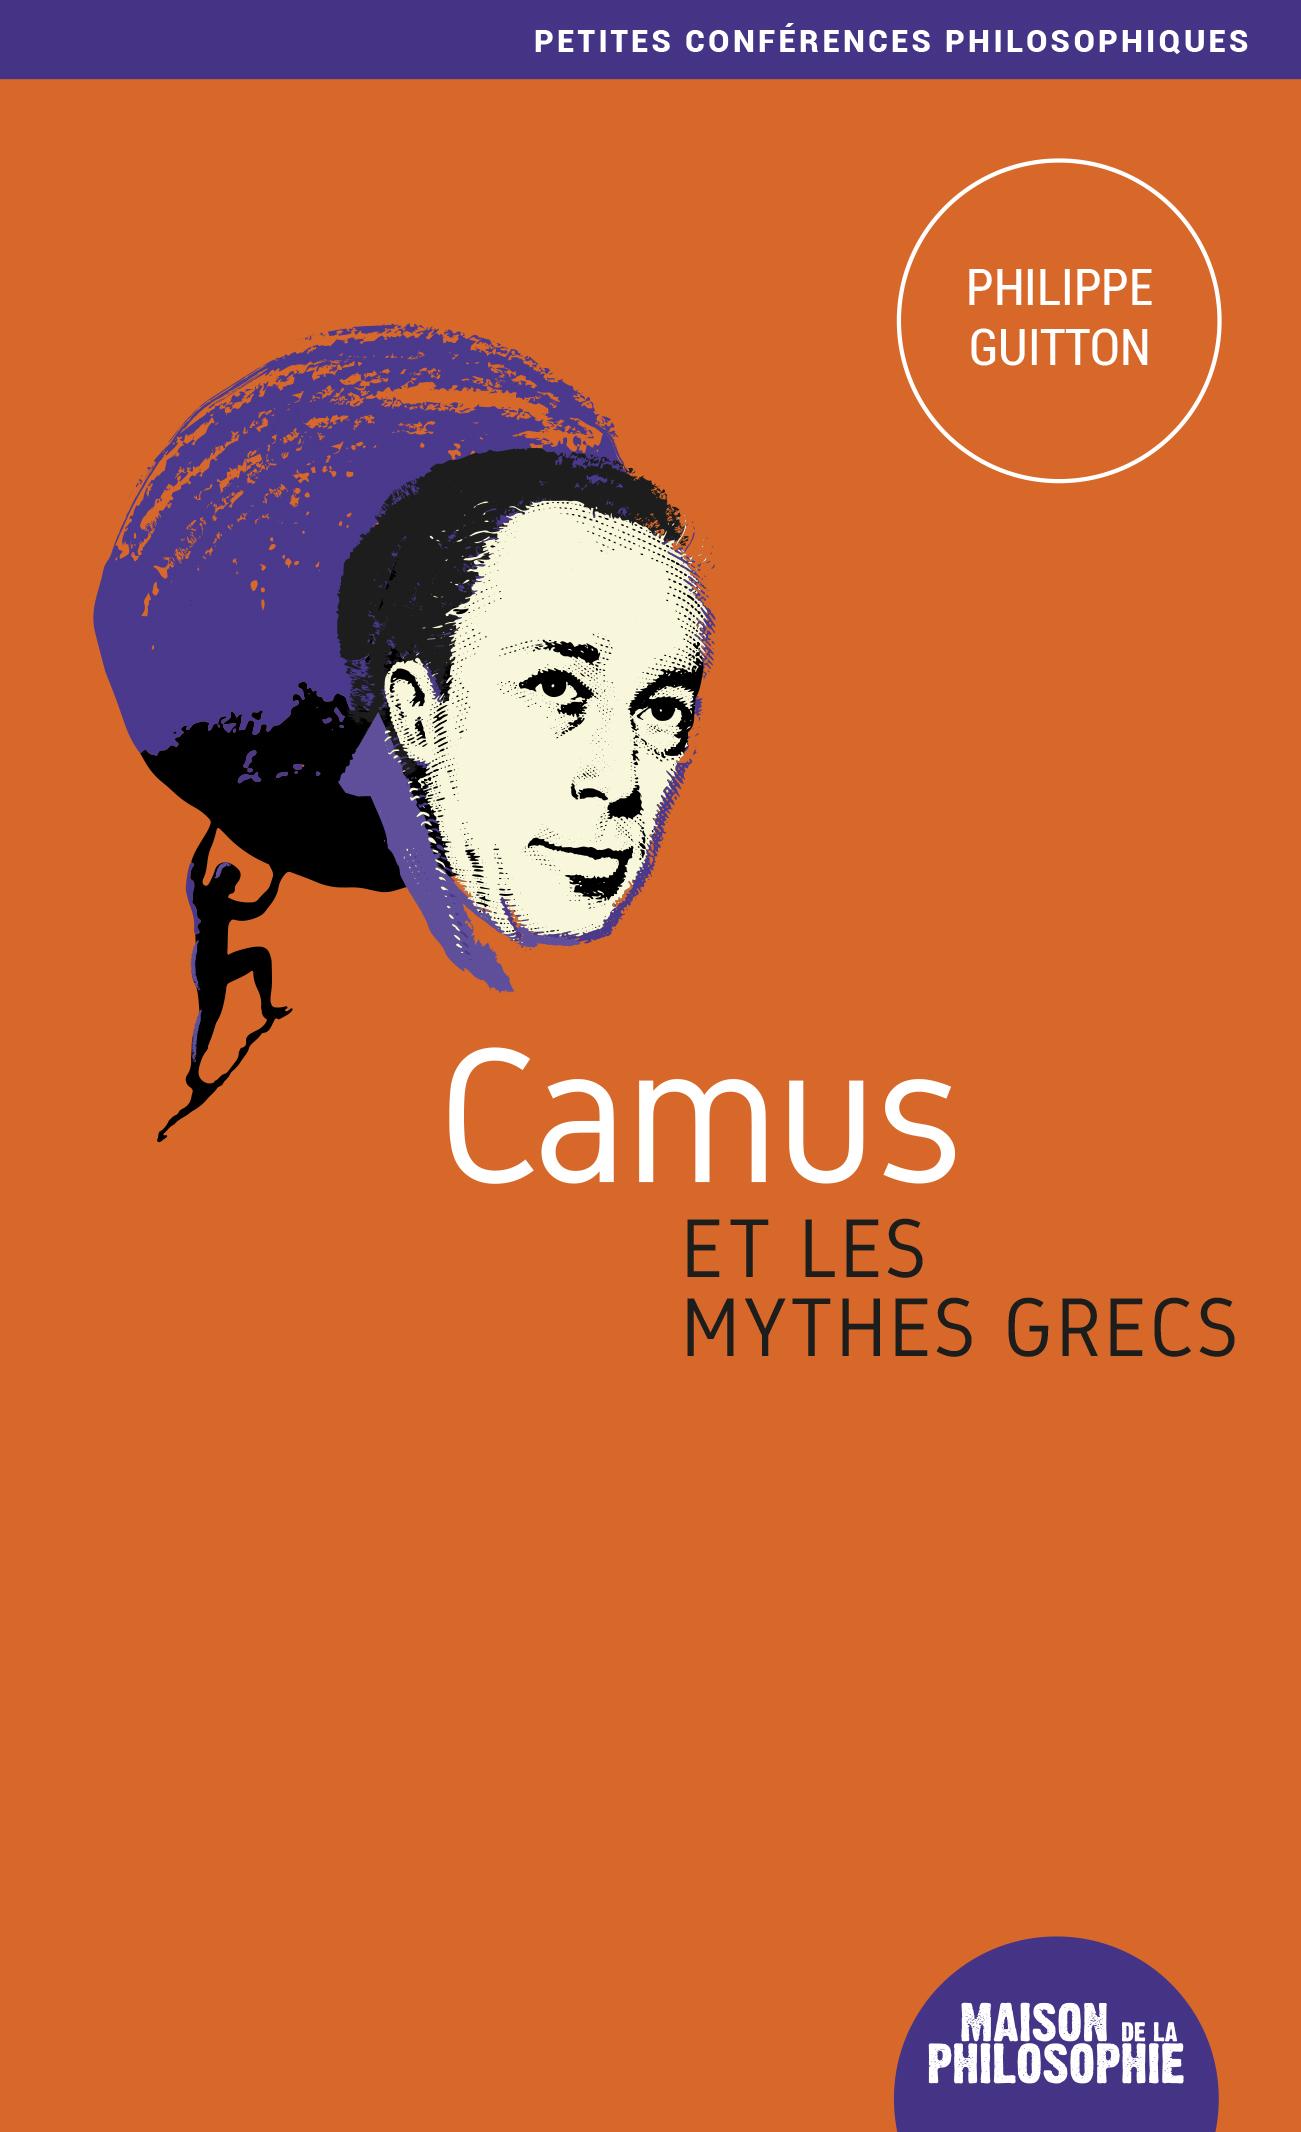 24-CV-Camus-1